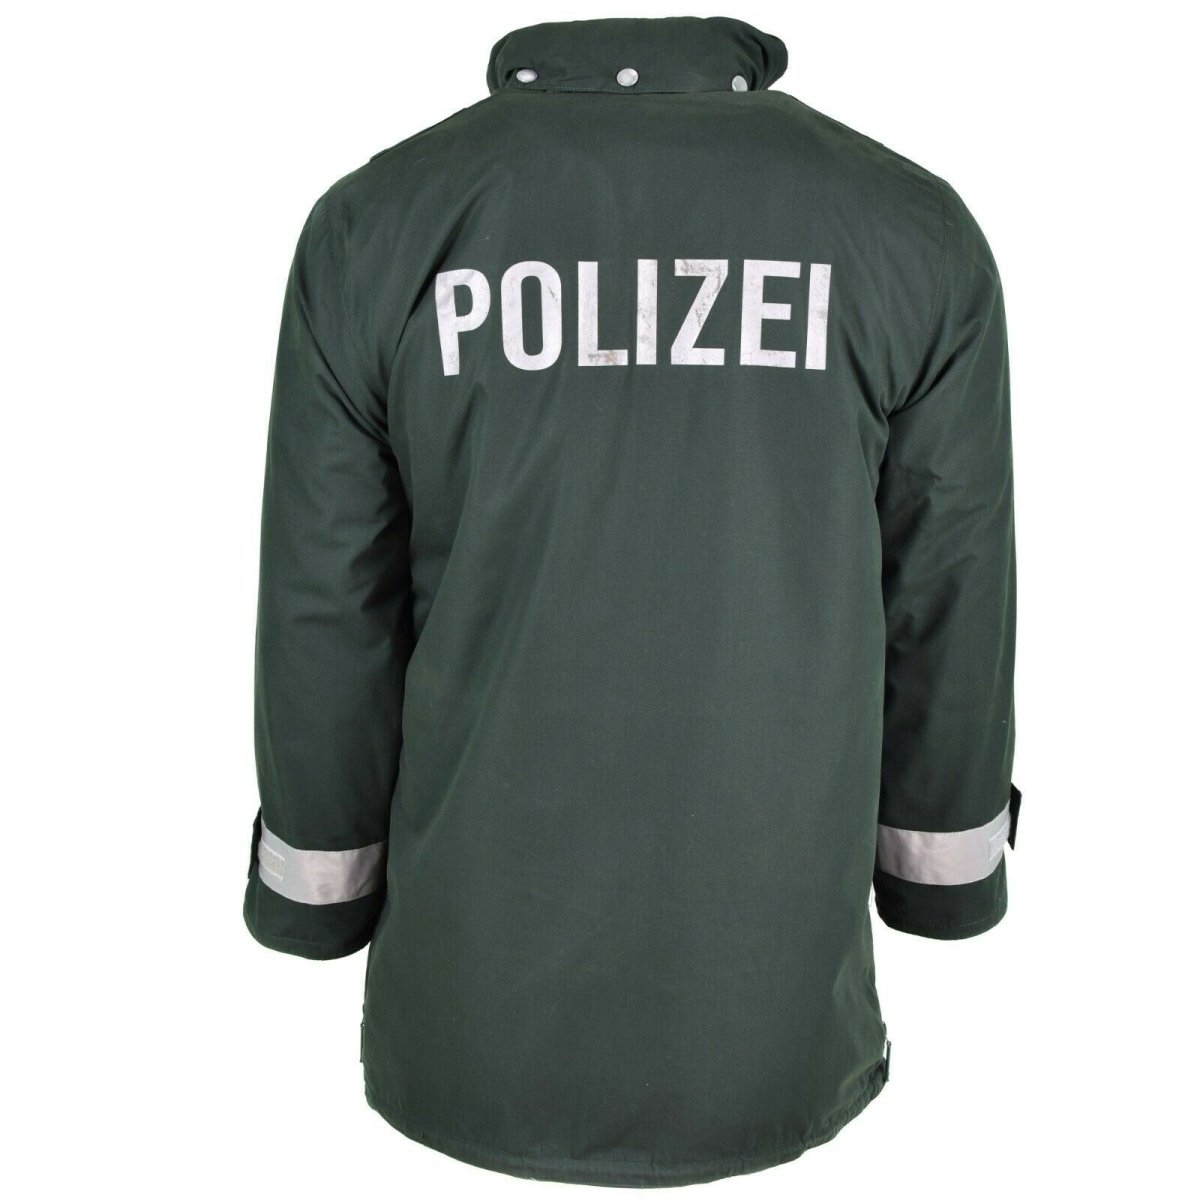 German Police jacket GoreTex waterproof rain parka surplus issue ...